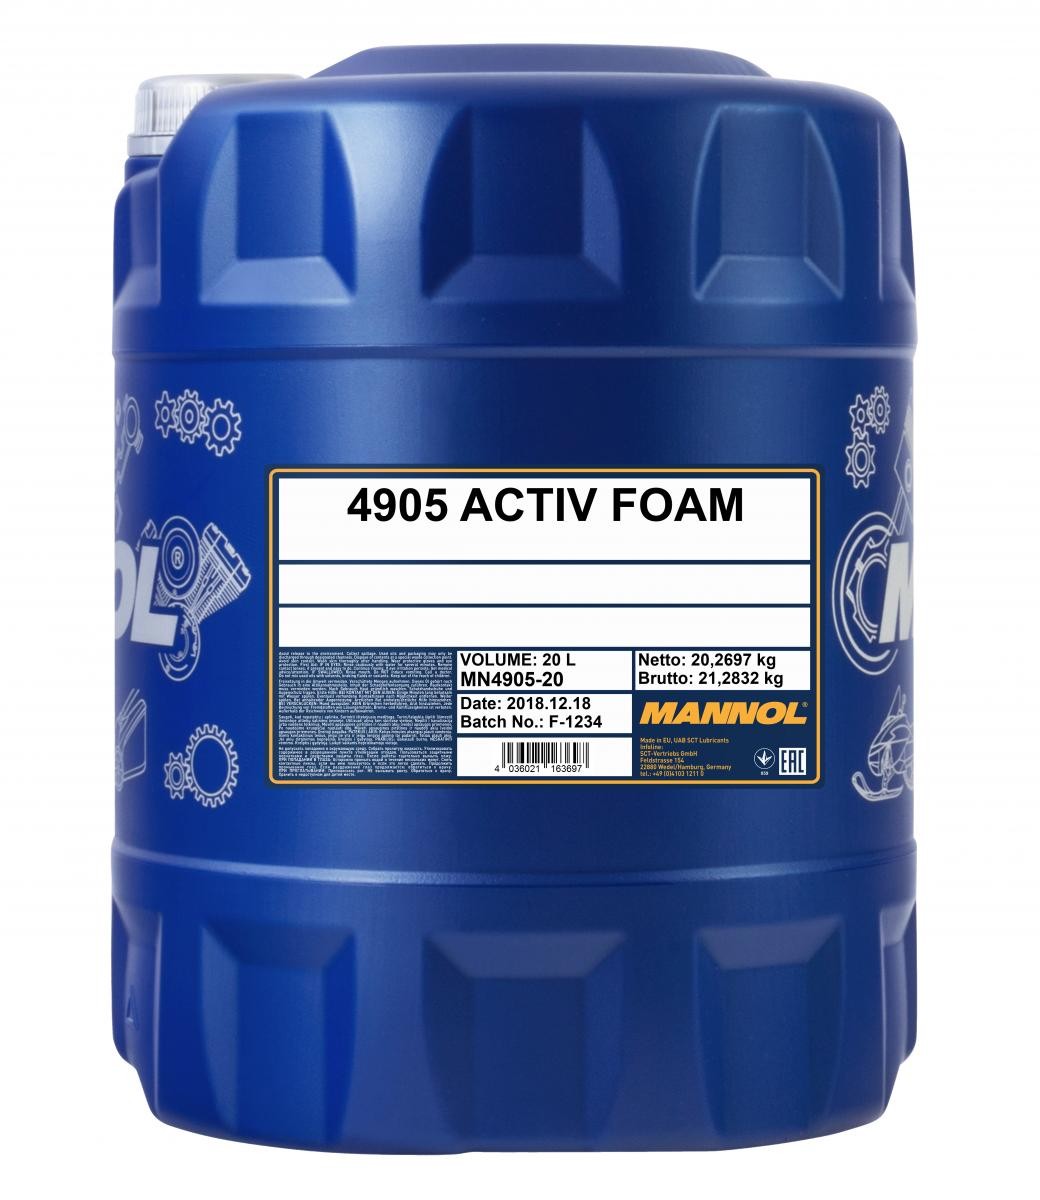 Mannol 4905 Activ Foam Aktivschaum Autoshampoo 20 Liter